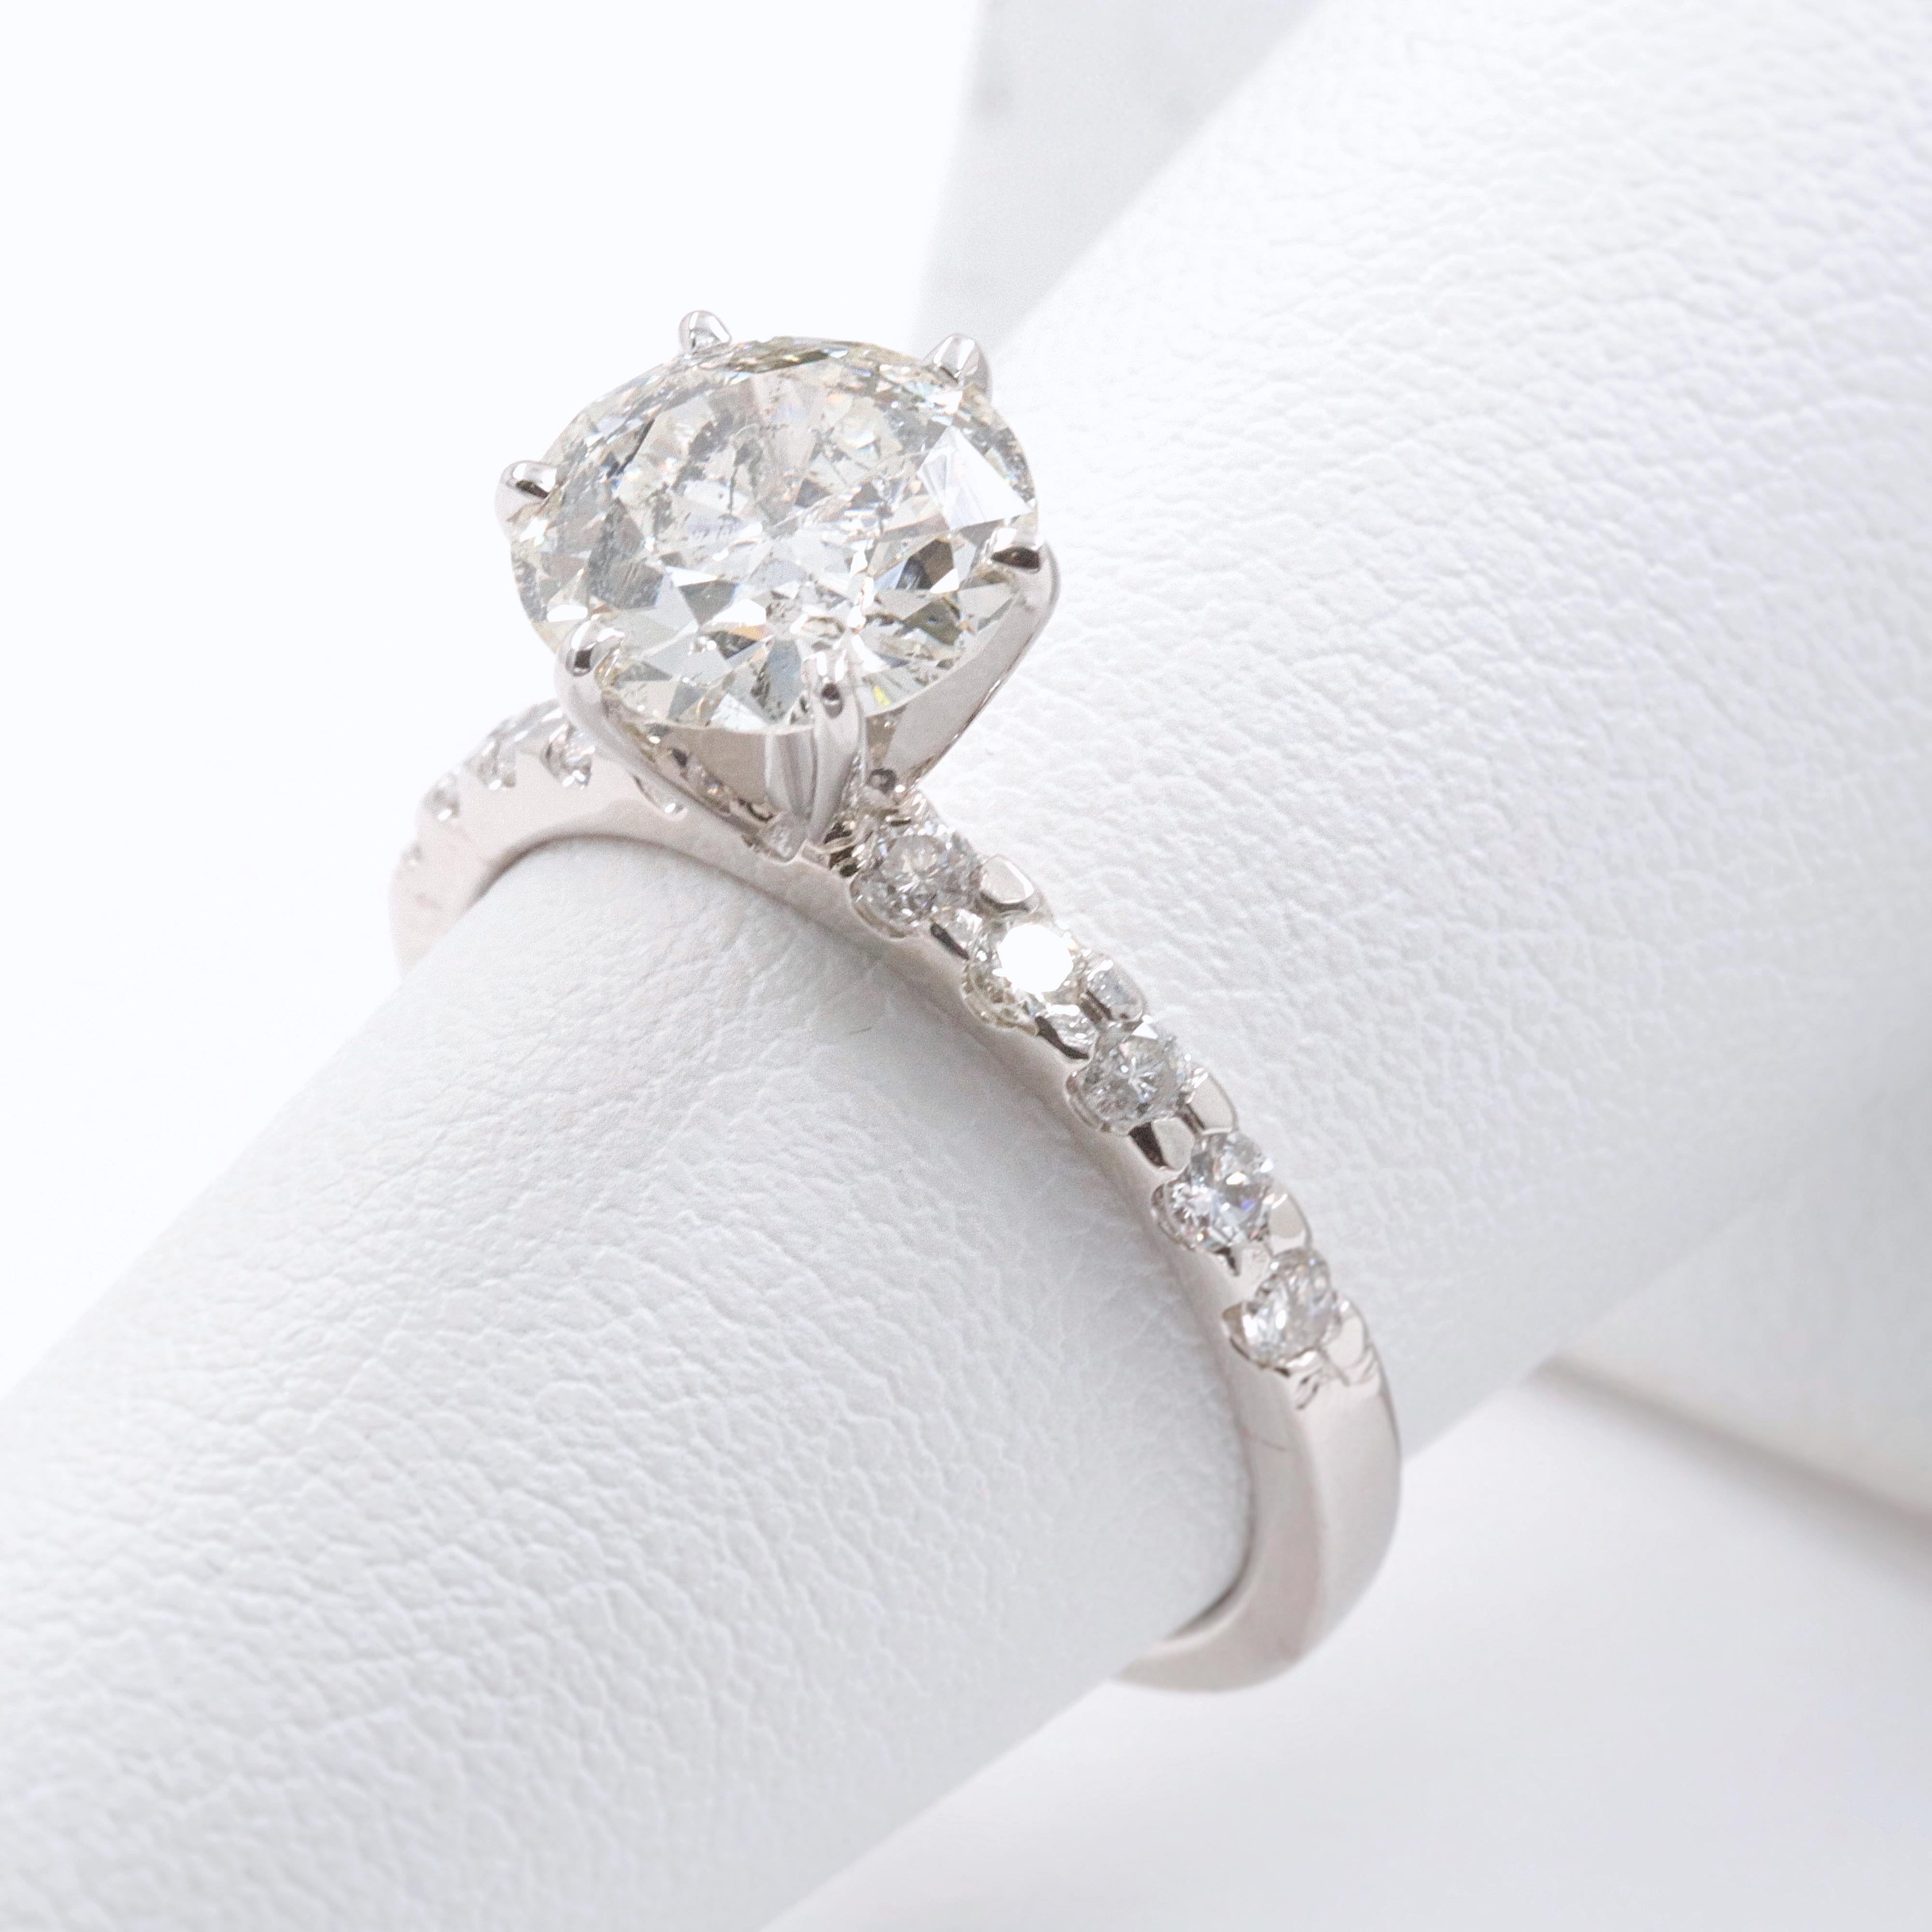 Old Cut Diamond Engagement Ring 1.94 Carat Set in 14 Karat White Gold 4